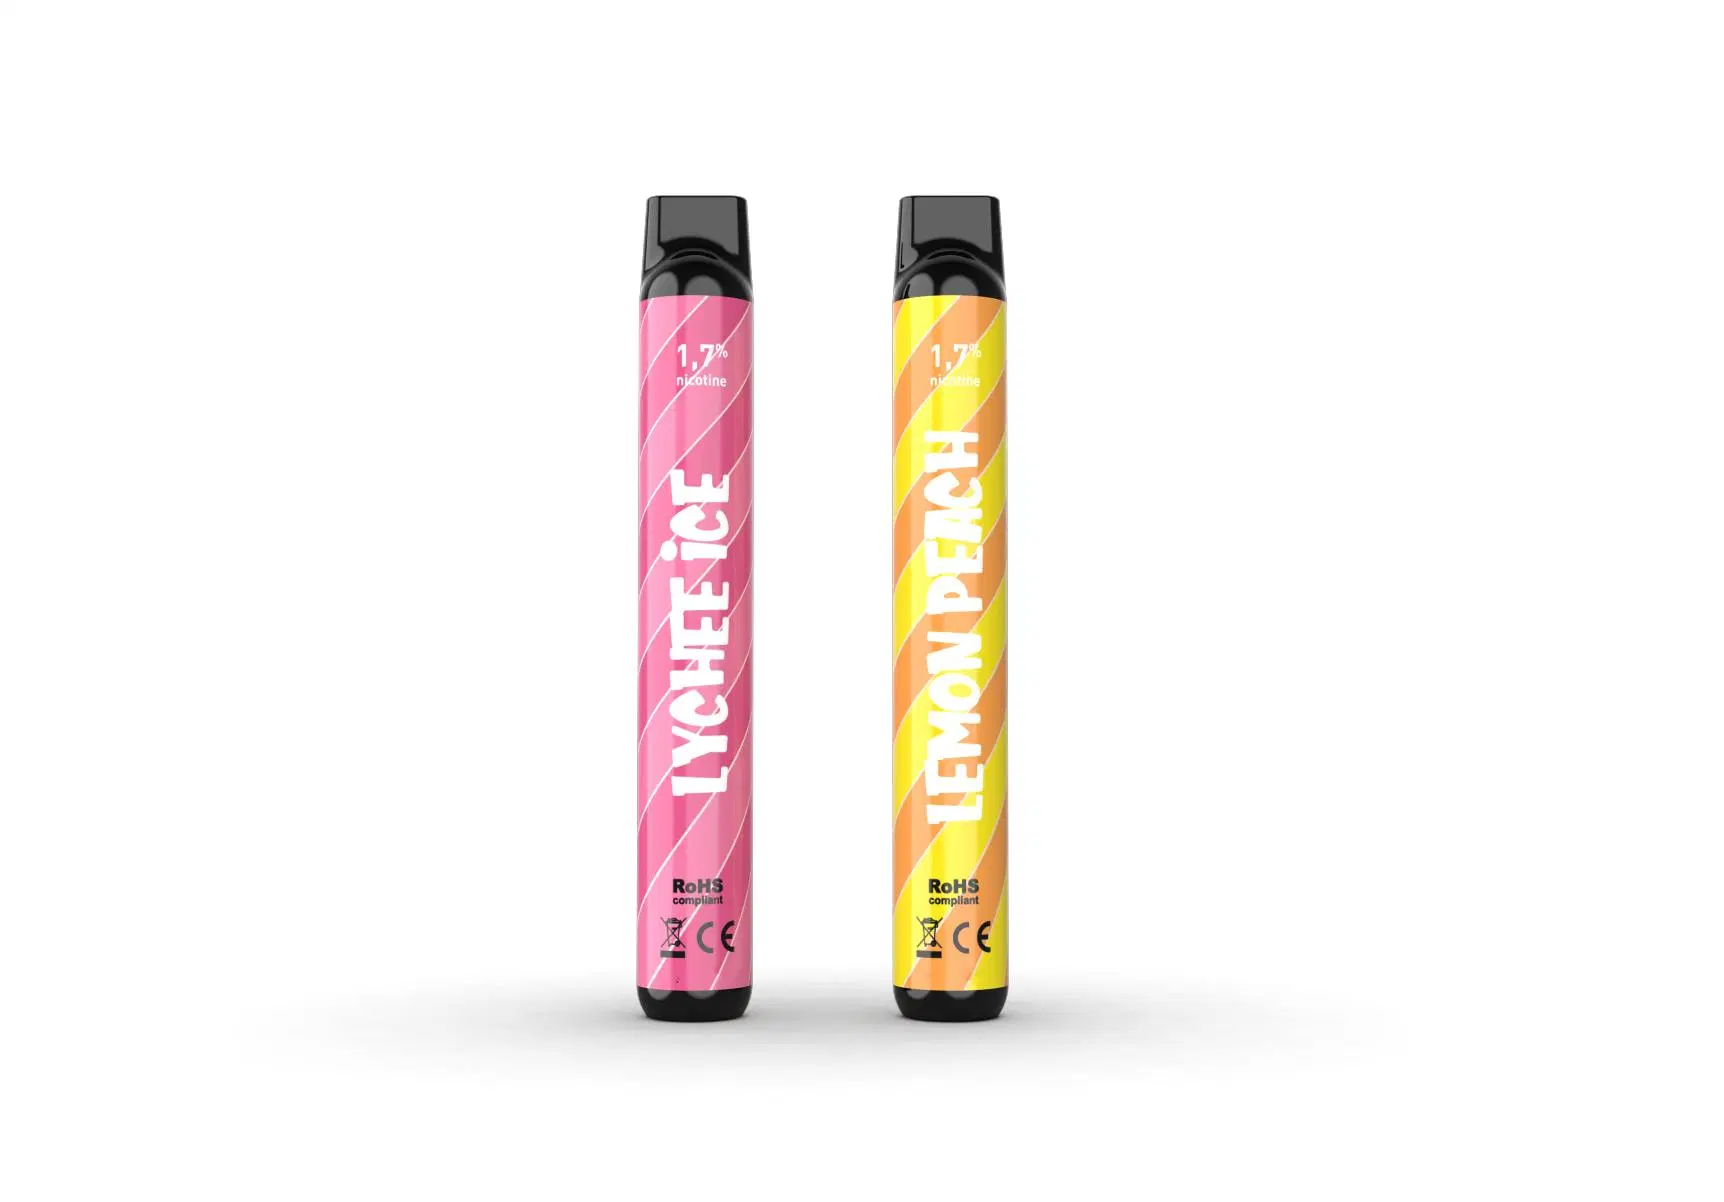 Dunke Hot vendre en France Vapotage jetable 900 bouffée Vape 3ml jetable Mini Pen kit e-cigarette en usine de gros Vaporizador Wape Desechable plusieurs E Liquide